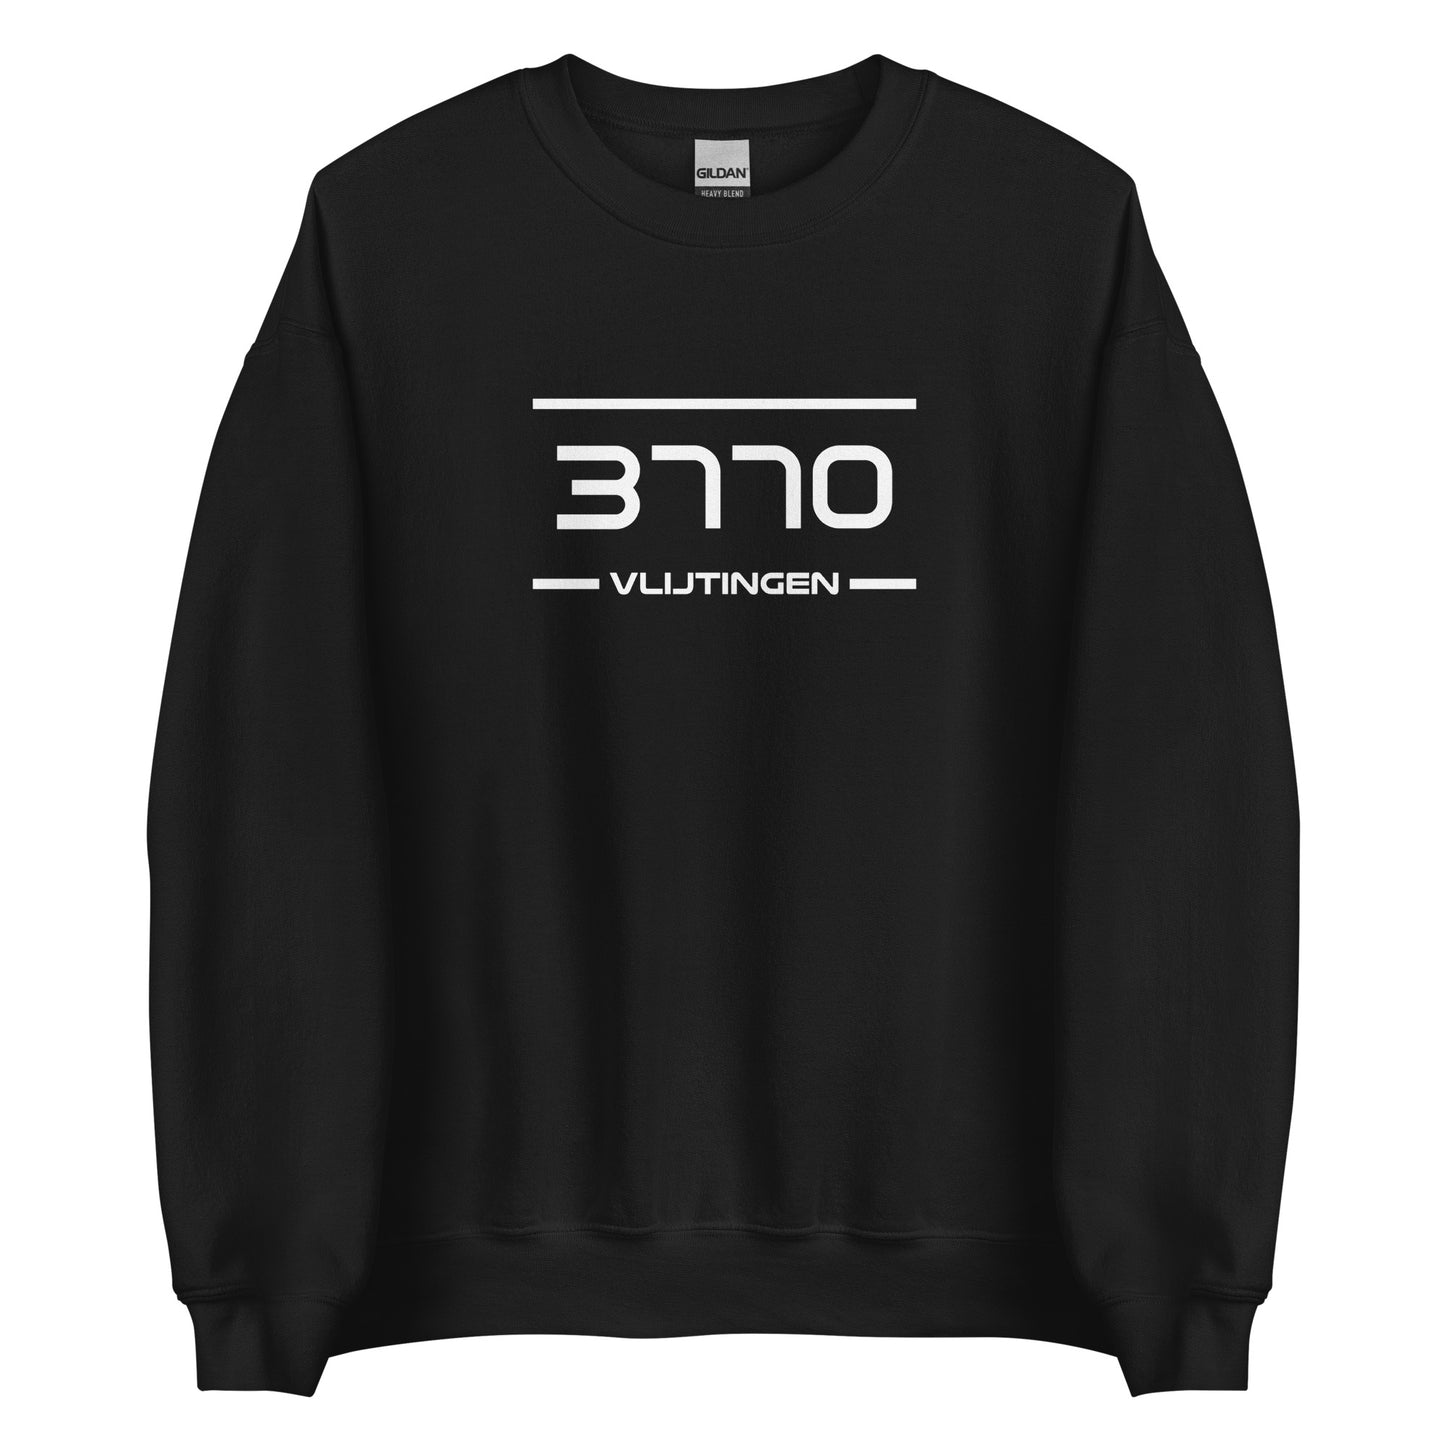 Sweater - 3770 - Vlijtingen (M/V)